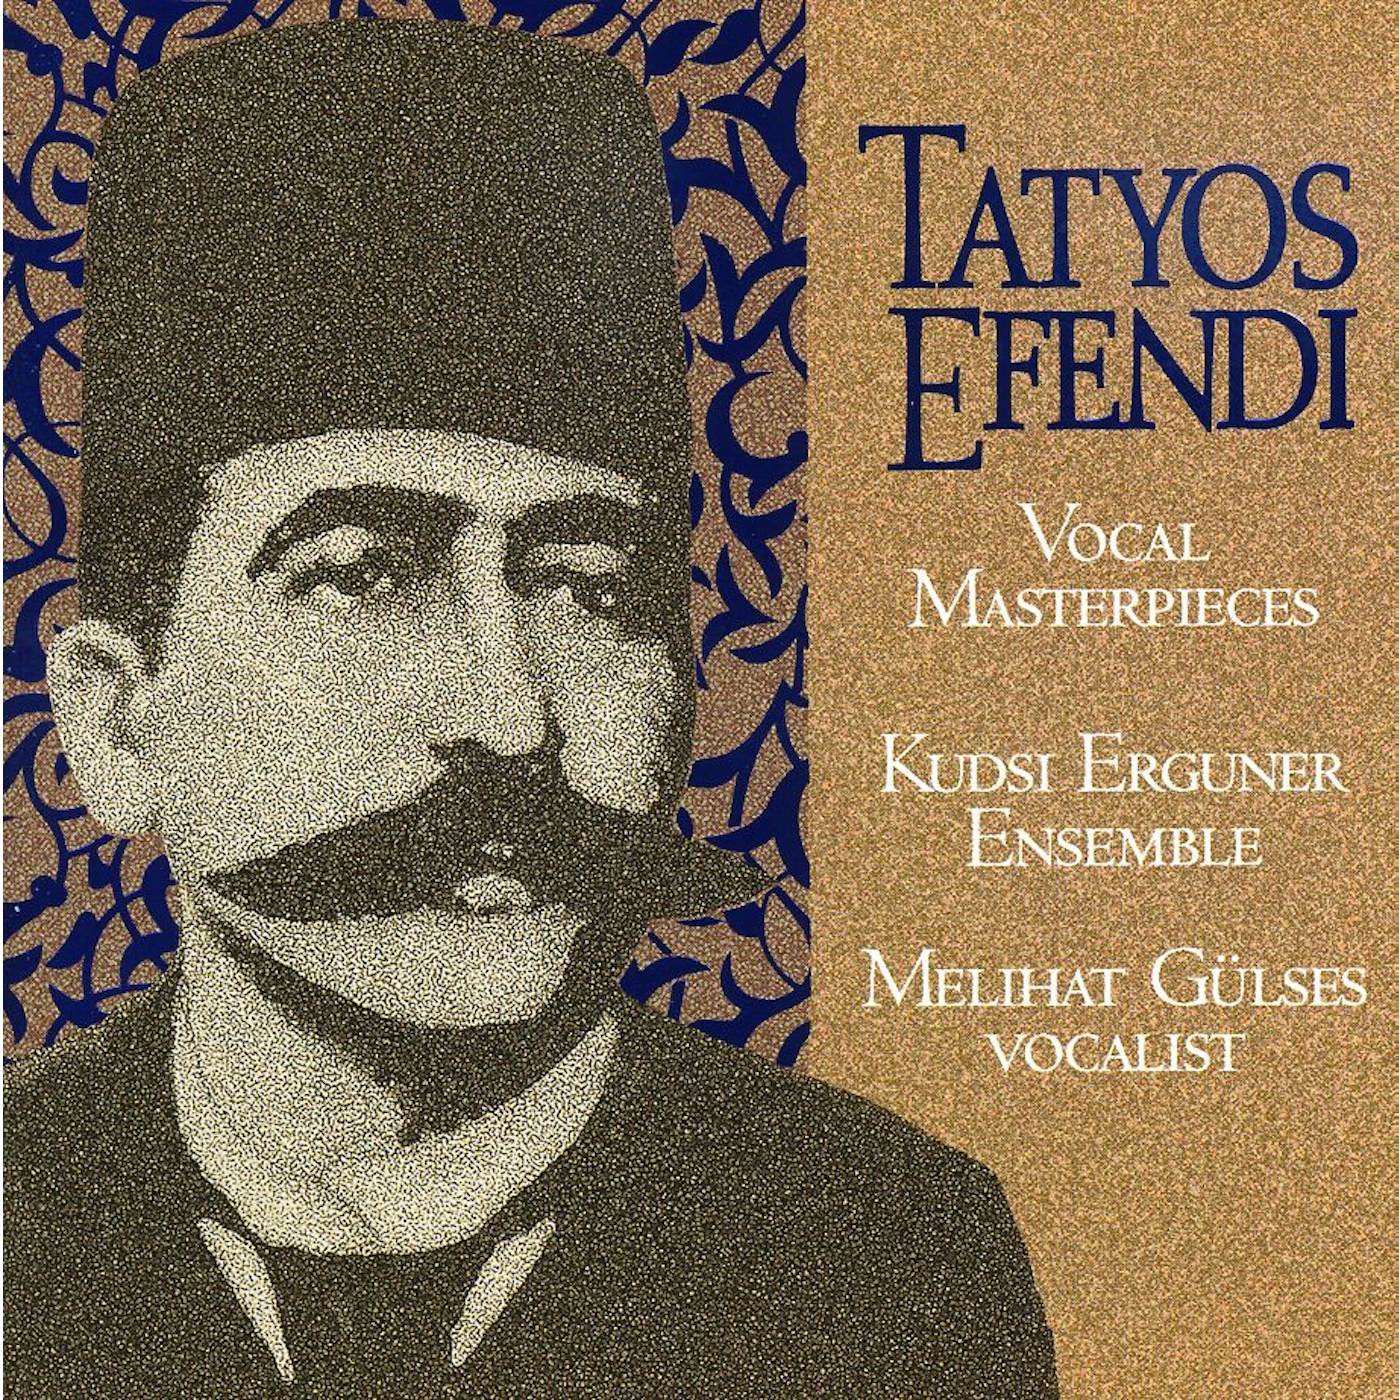 Kudsi Erguner VOCAL MASTERPIECES OF KEMANI TATYOS EFENDI CD